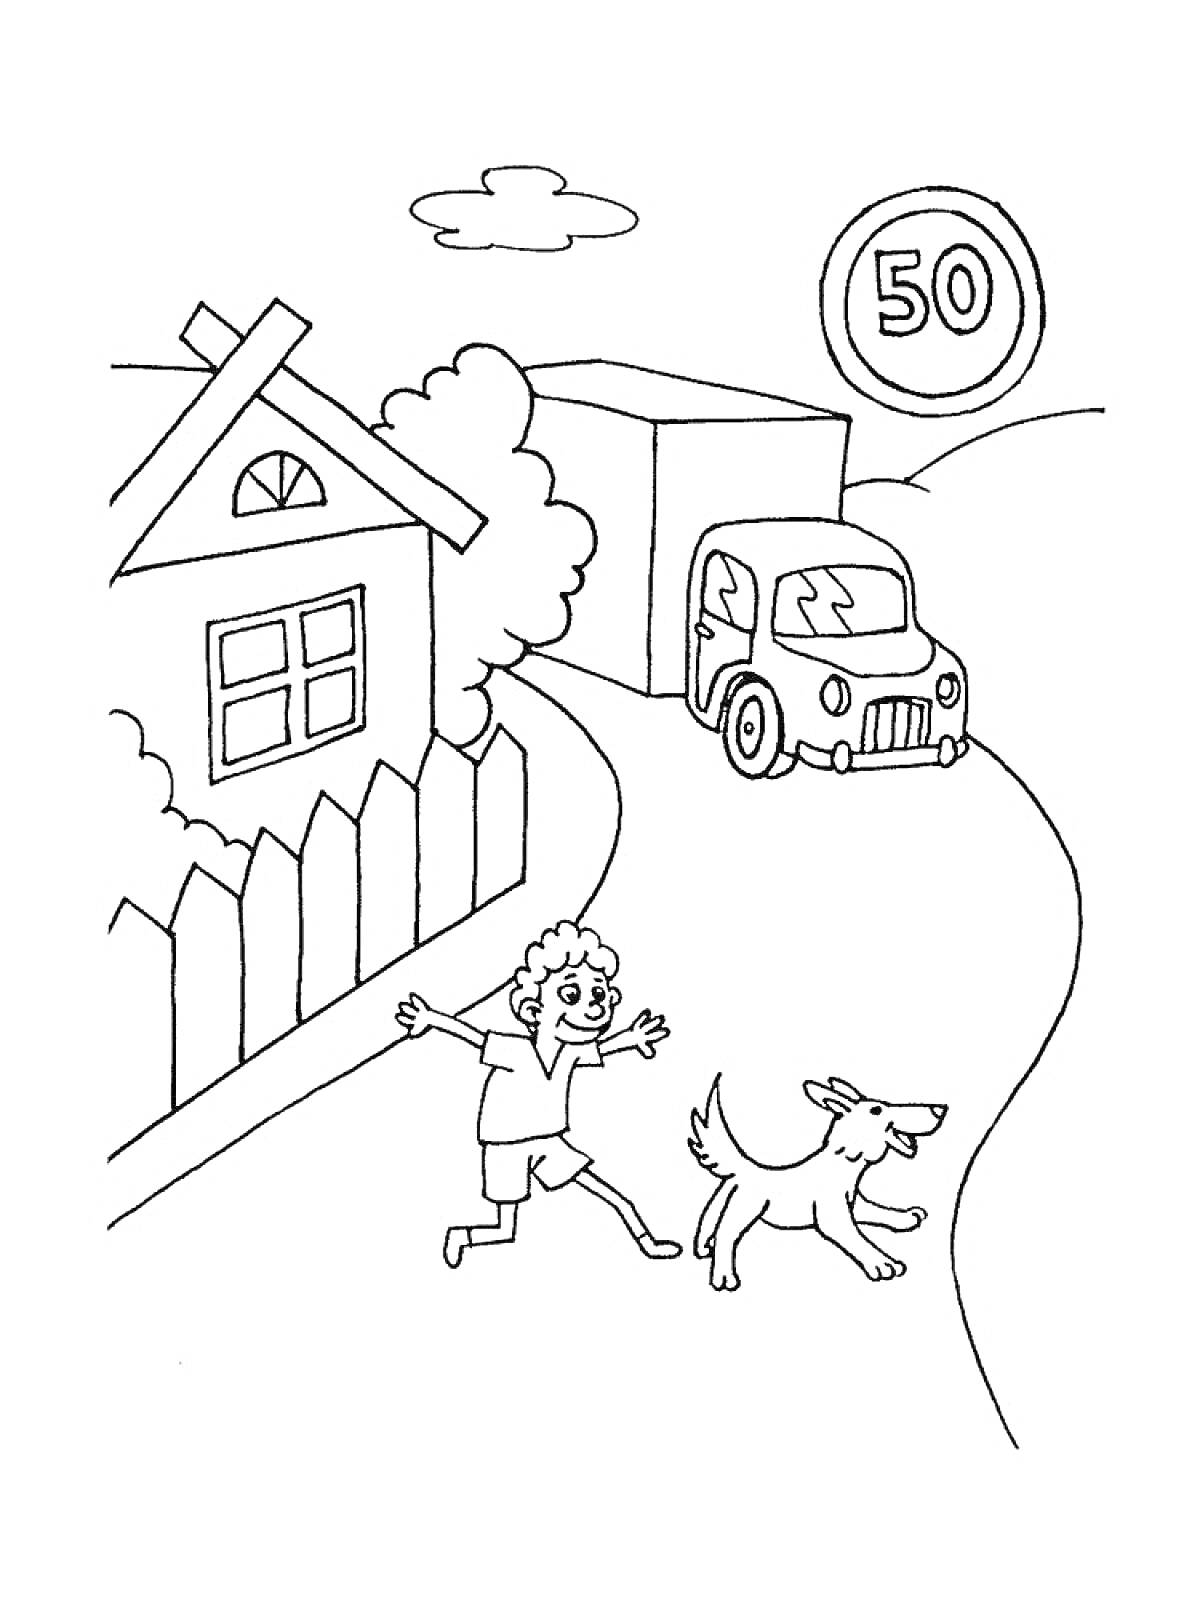 Дом, забор, кусты, деревья, дорога, грузовик, легковая машина, ребенок, собака, знак ограничения скорости 50